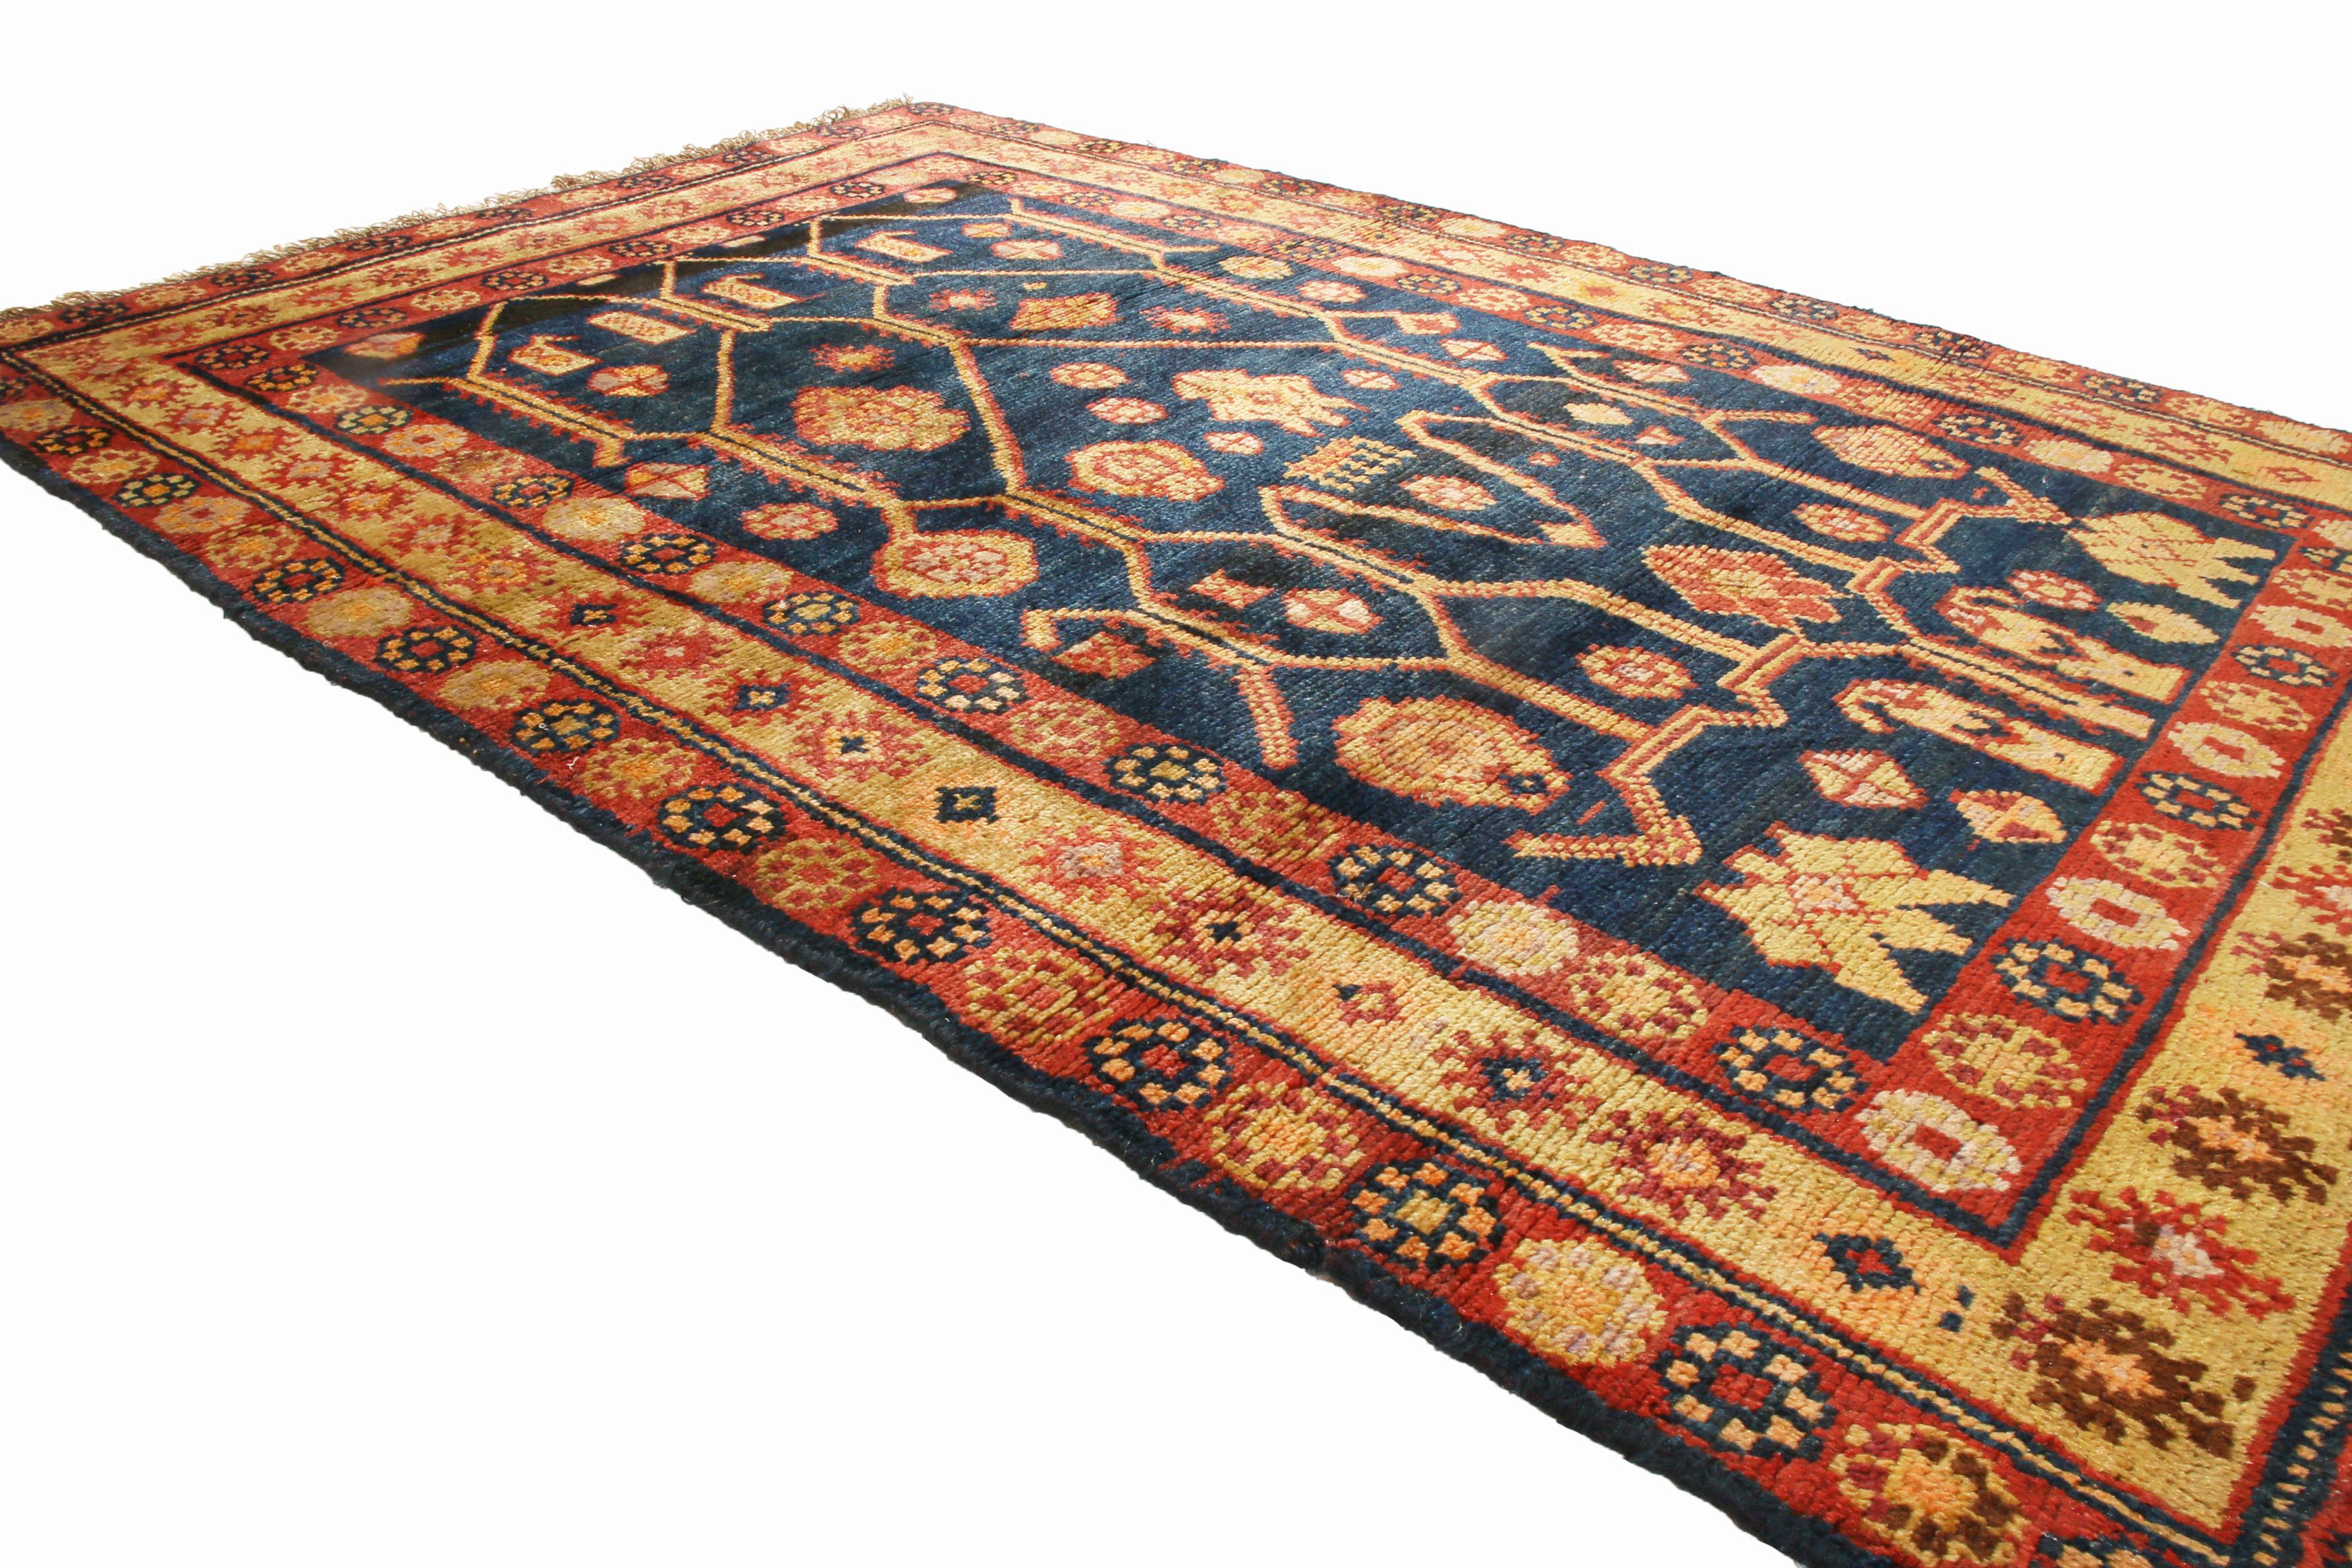 Dieser antike, traditionelle Wollteppich aus Samarkand stammt aus Ostturkestan und zeichnet sich durch ein hervorragendes Feldmuster mit einer faszinierenden Kombination aus gespiegelter und asymmetrischer Symbolik aus. Handgeknüpft aus